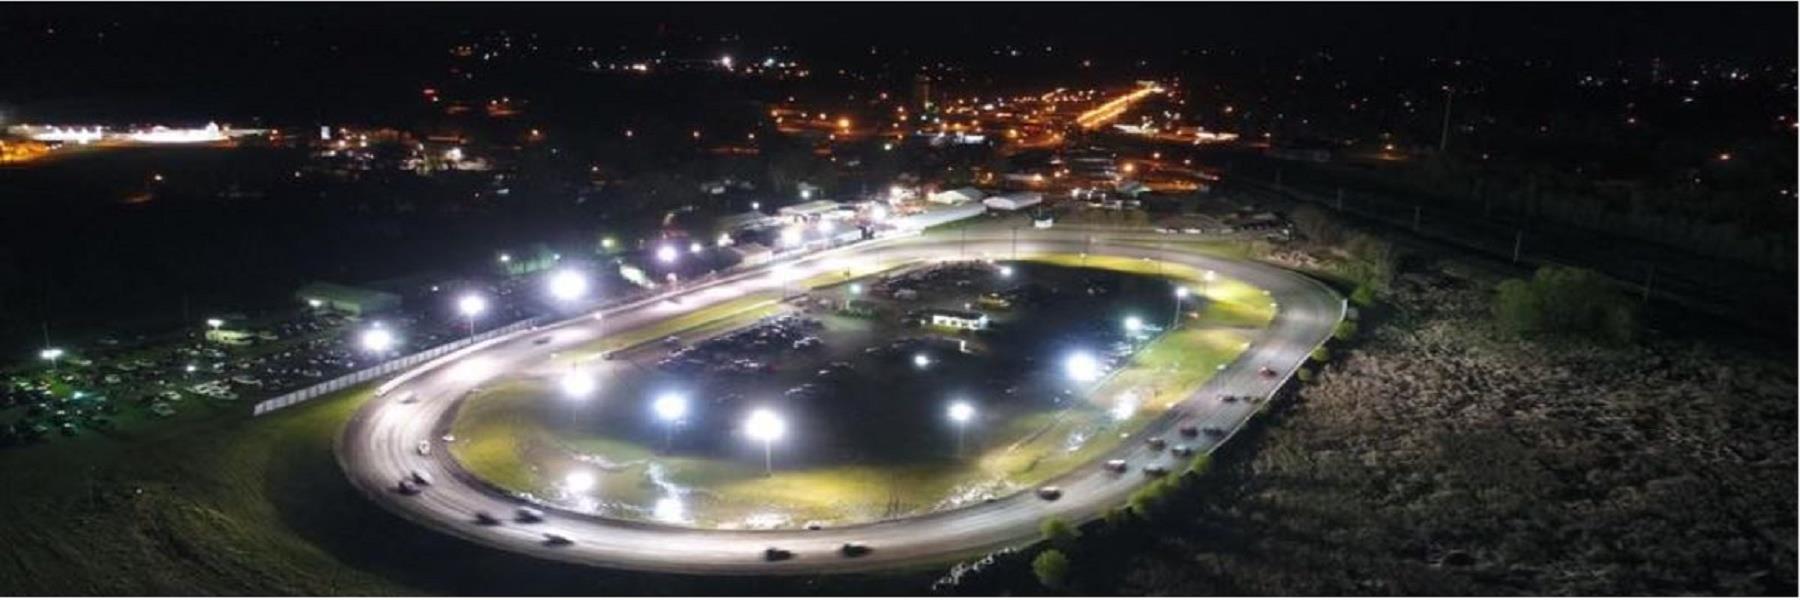 6/24/2022 - Fiesta City Speedway